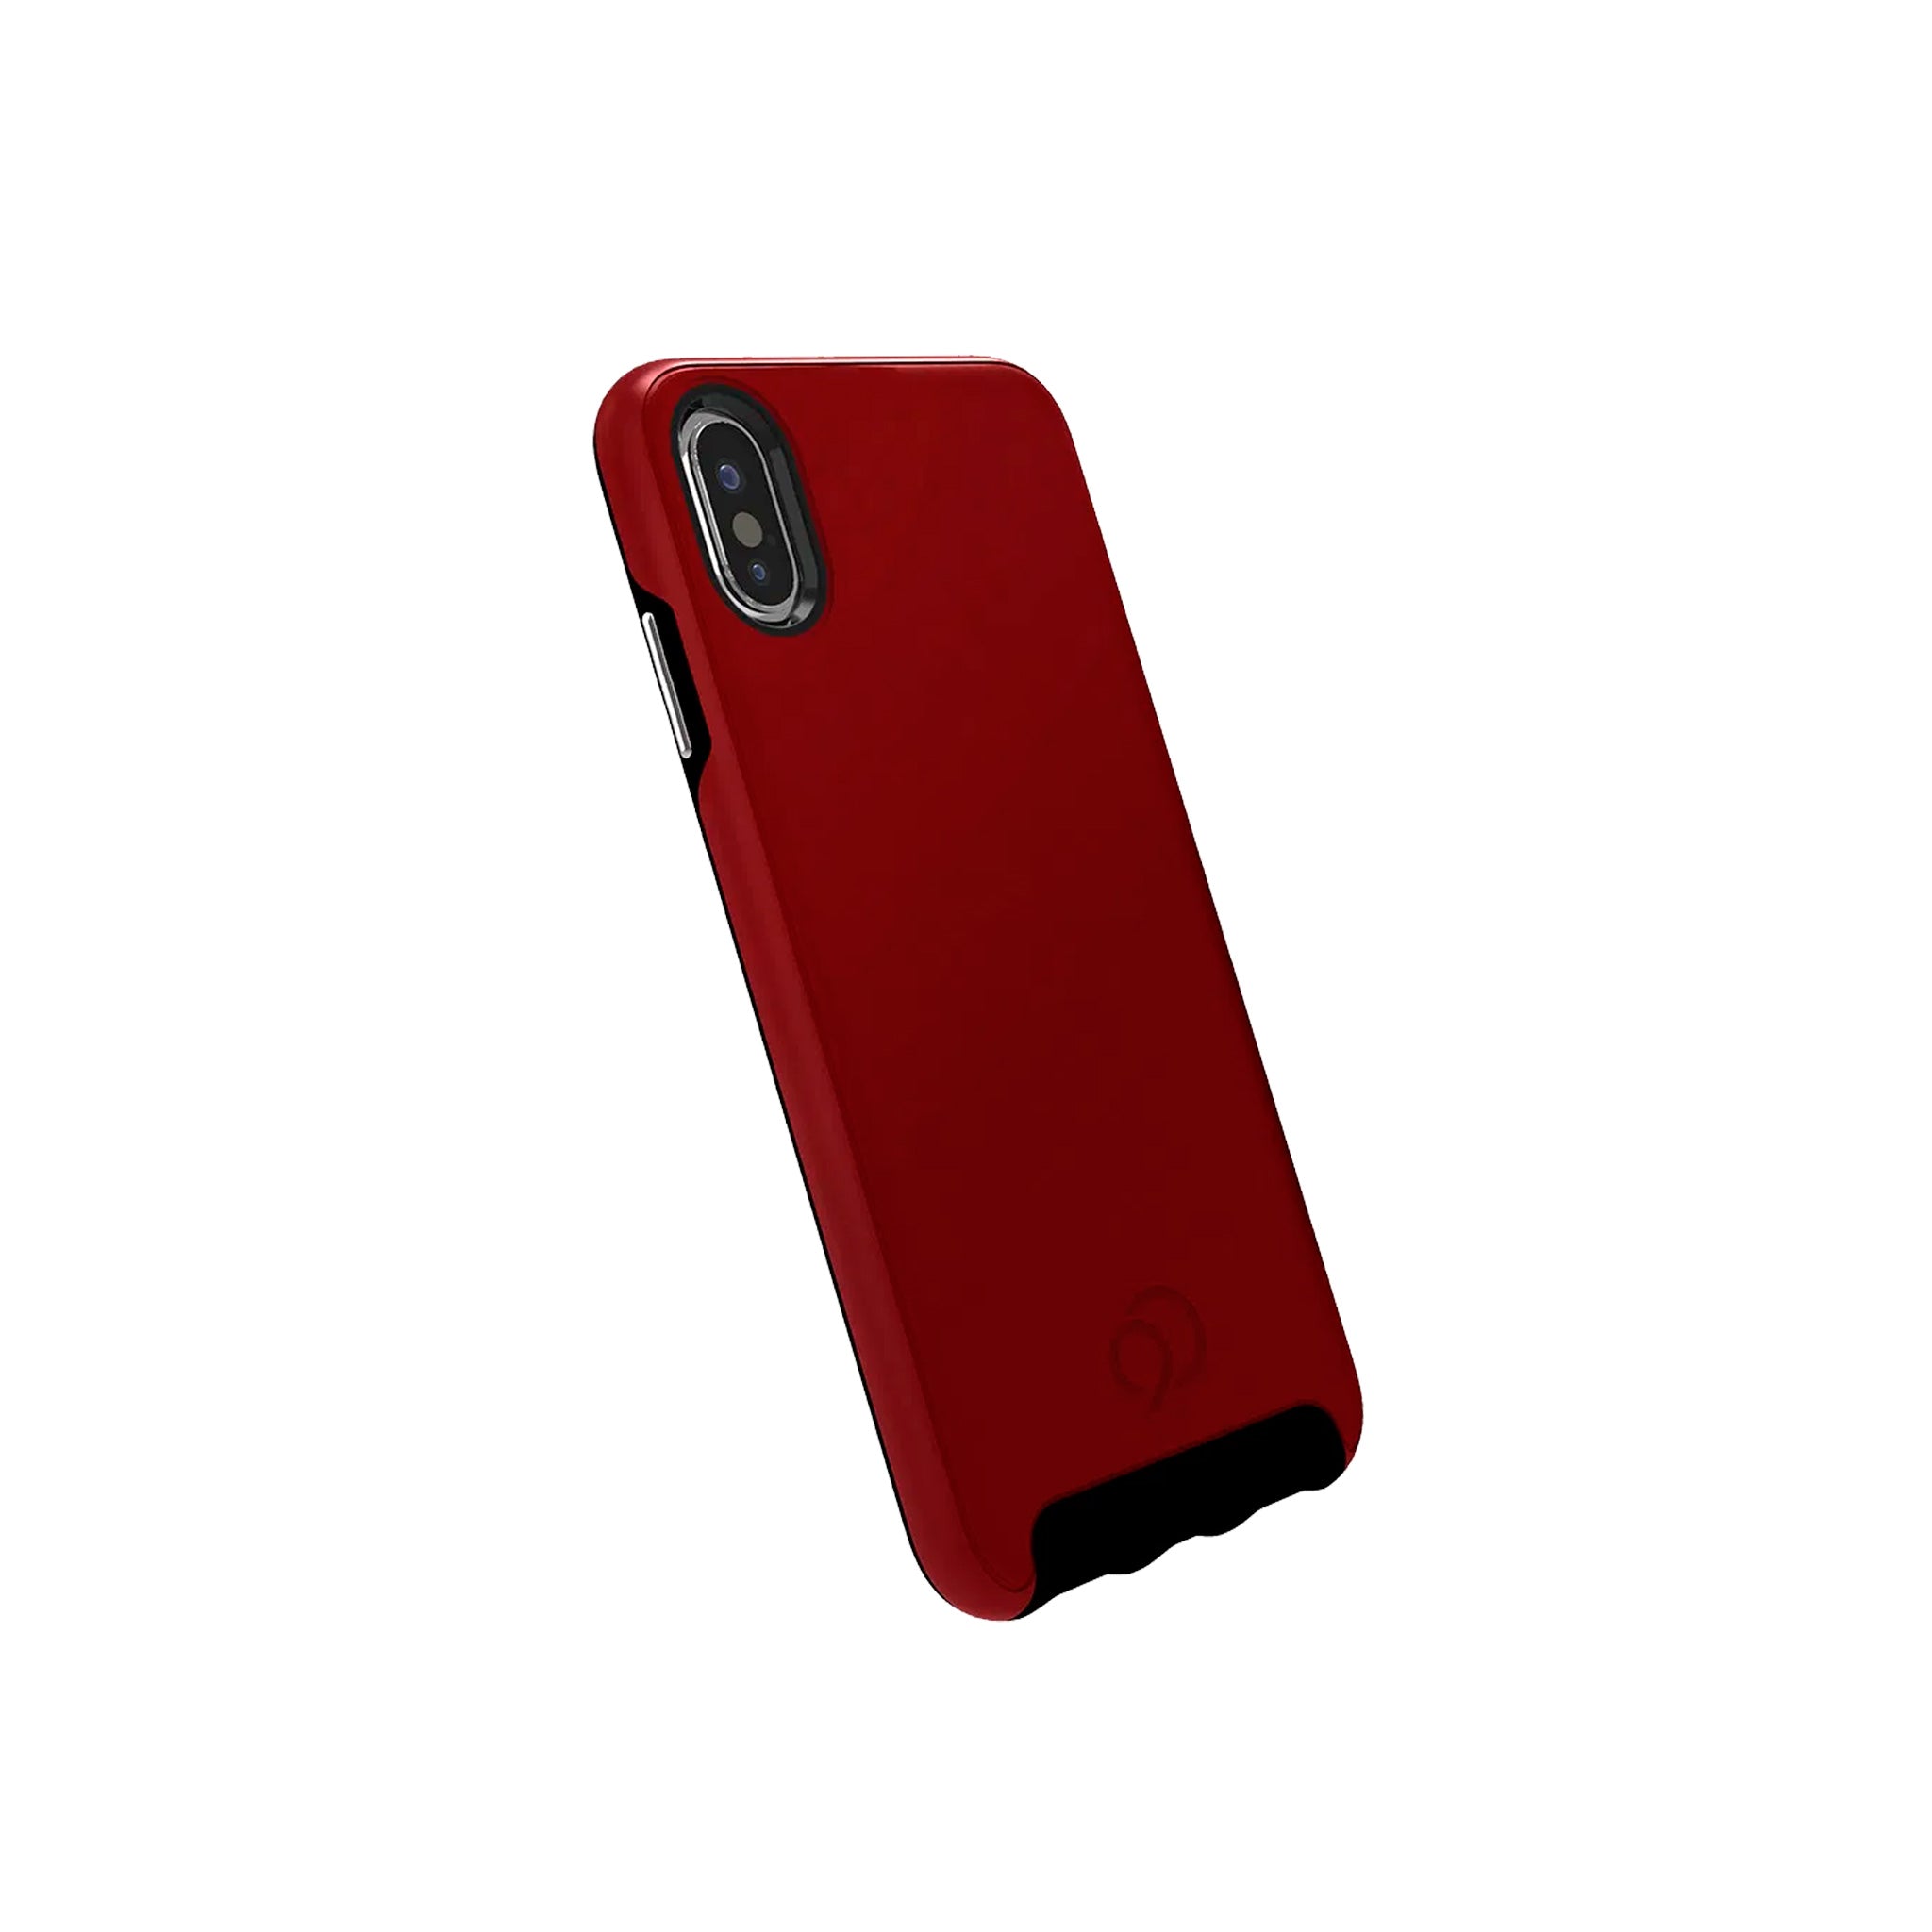 Nimbus9 - Cirrus 2 Case For Apple Iphone Xs / X - Crimson Red